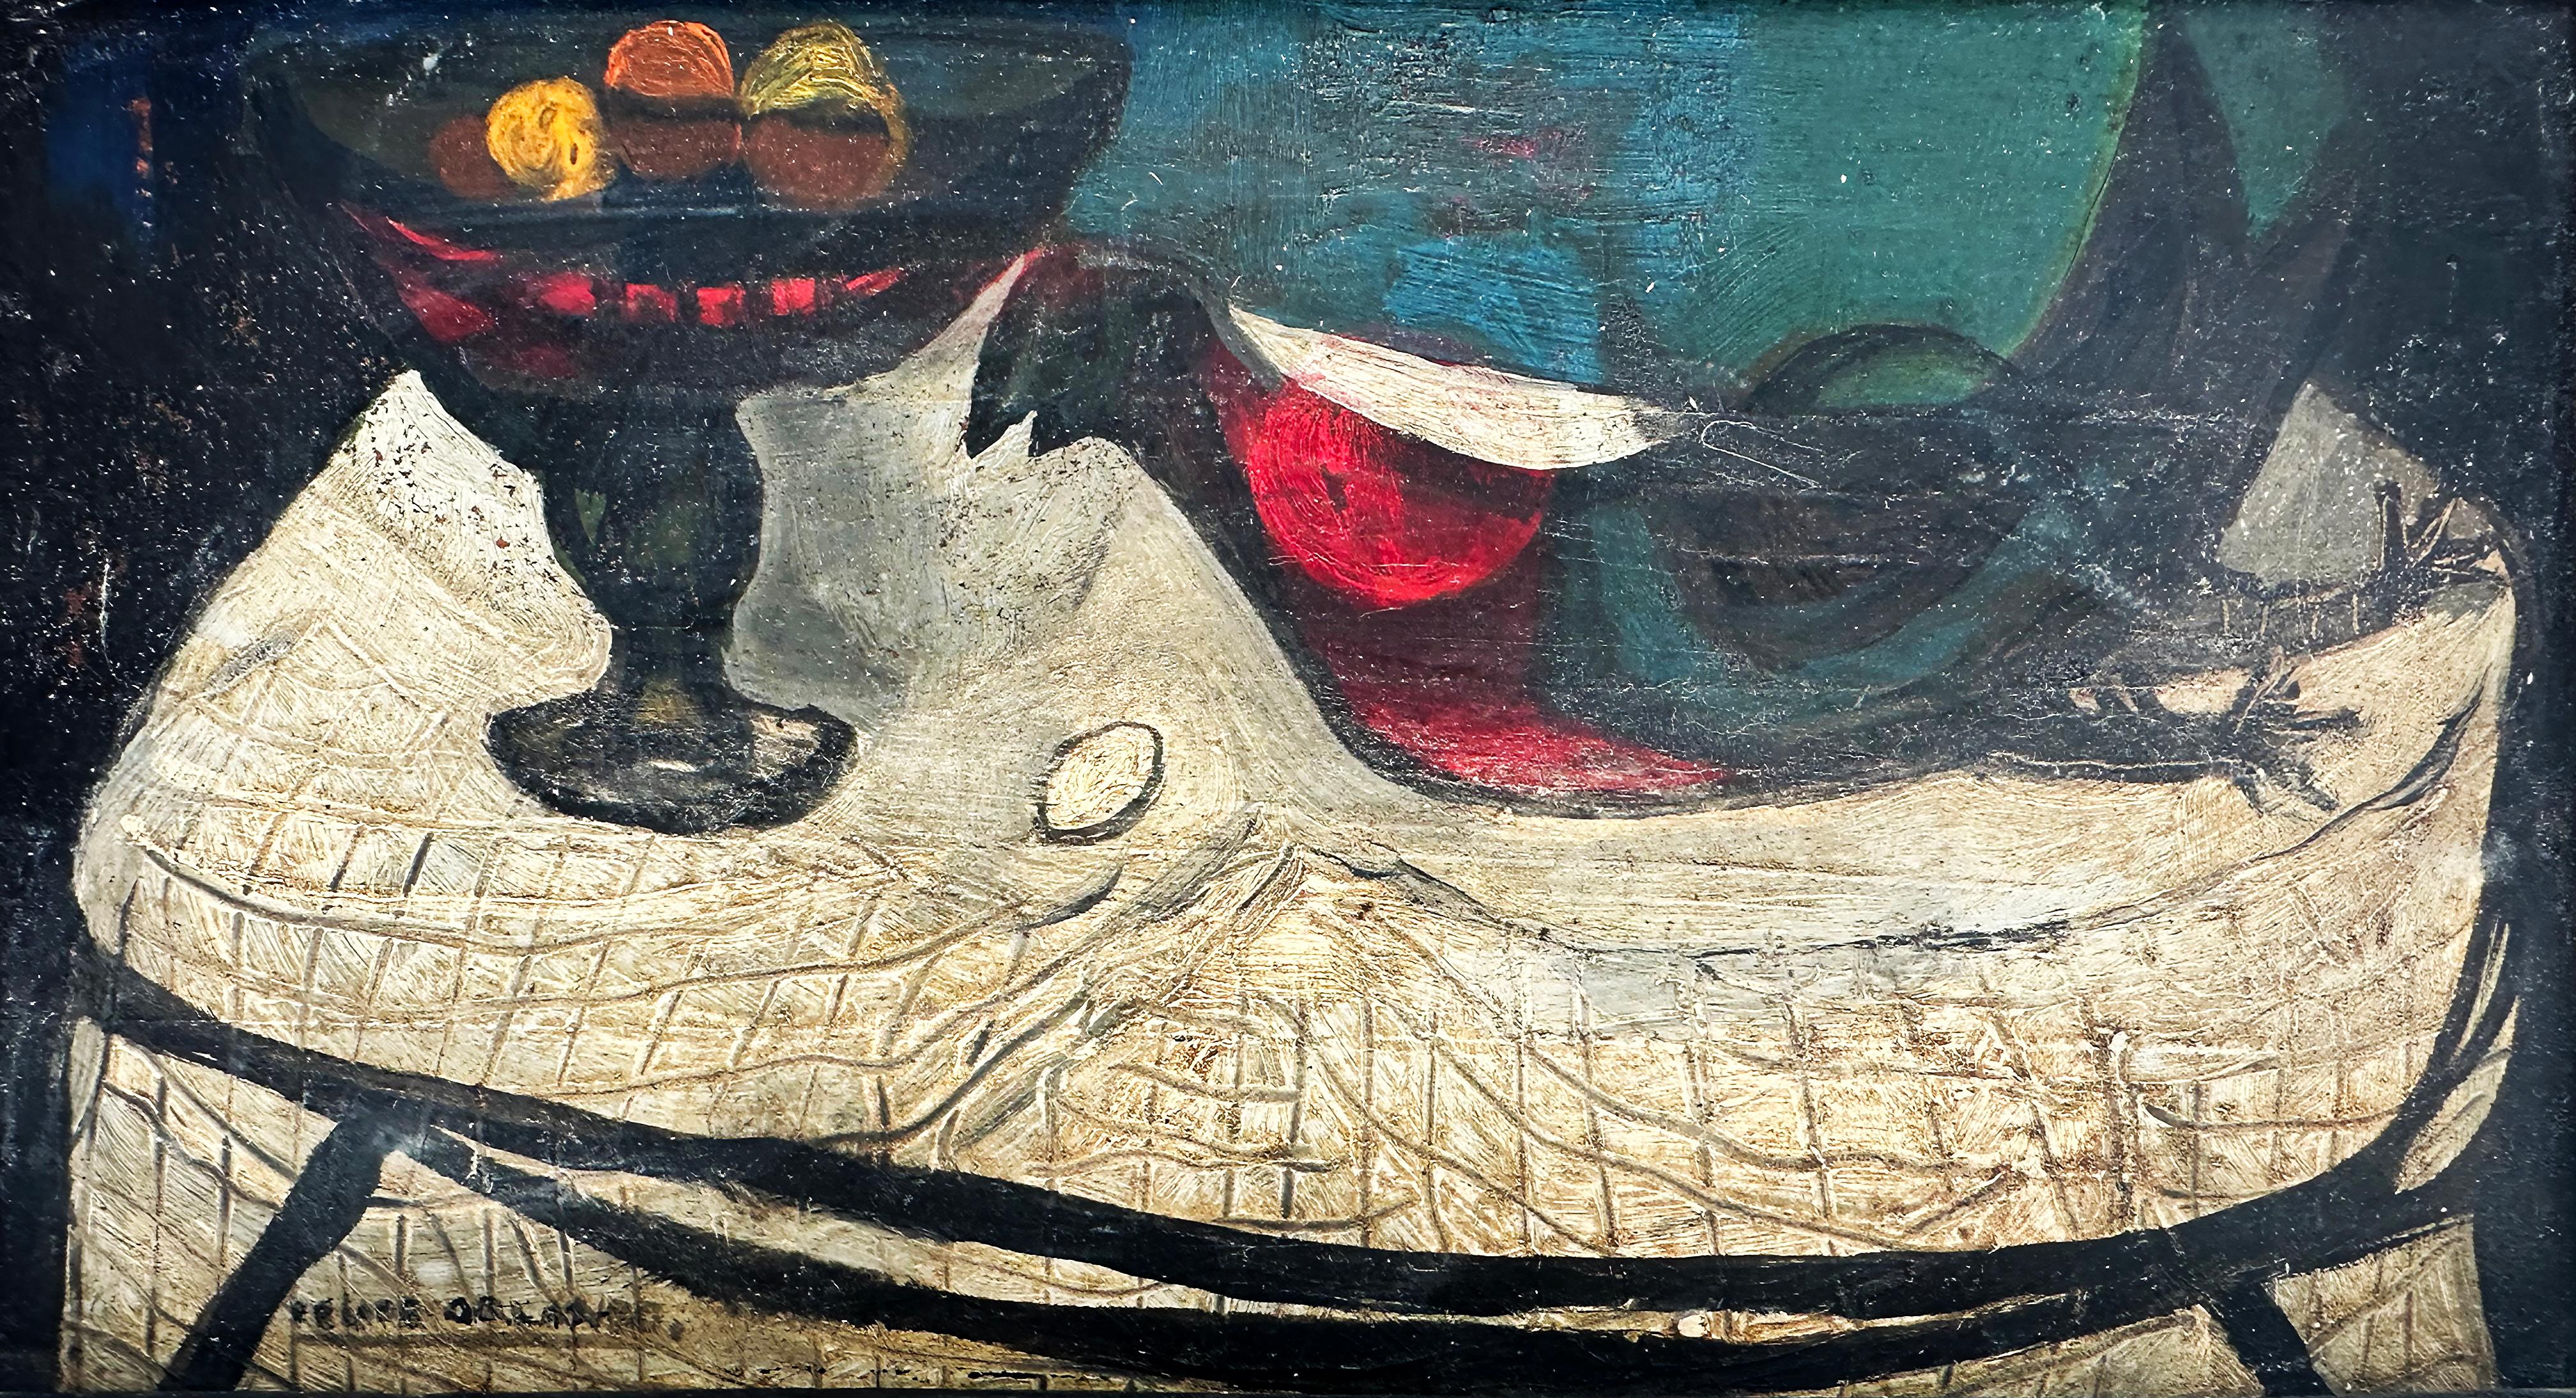 1951 Felipe Orlando, kubanisches Ölgemälde „Bodegon“, signiert und datiert 

Zum Verkauf angeboten wird eine seltene Ölgemälde auf Panel von der renommierten kubanischen Künstler Felipe Orlando (1911-2001) mit dem Titel 